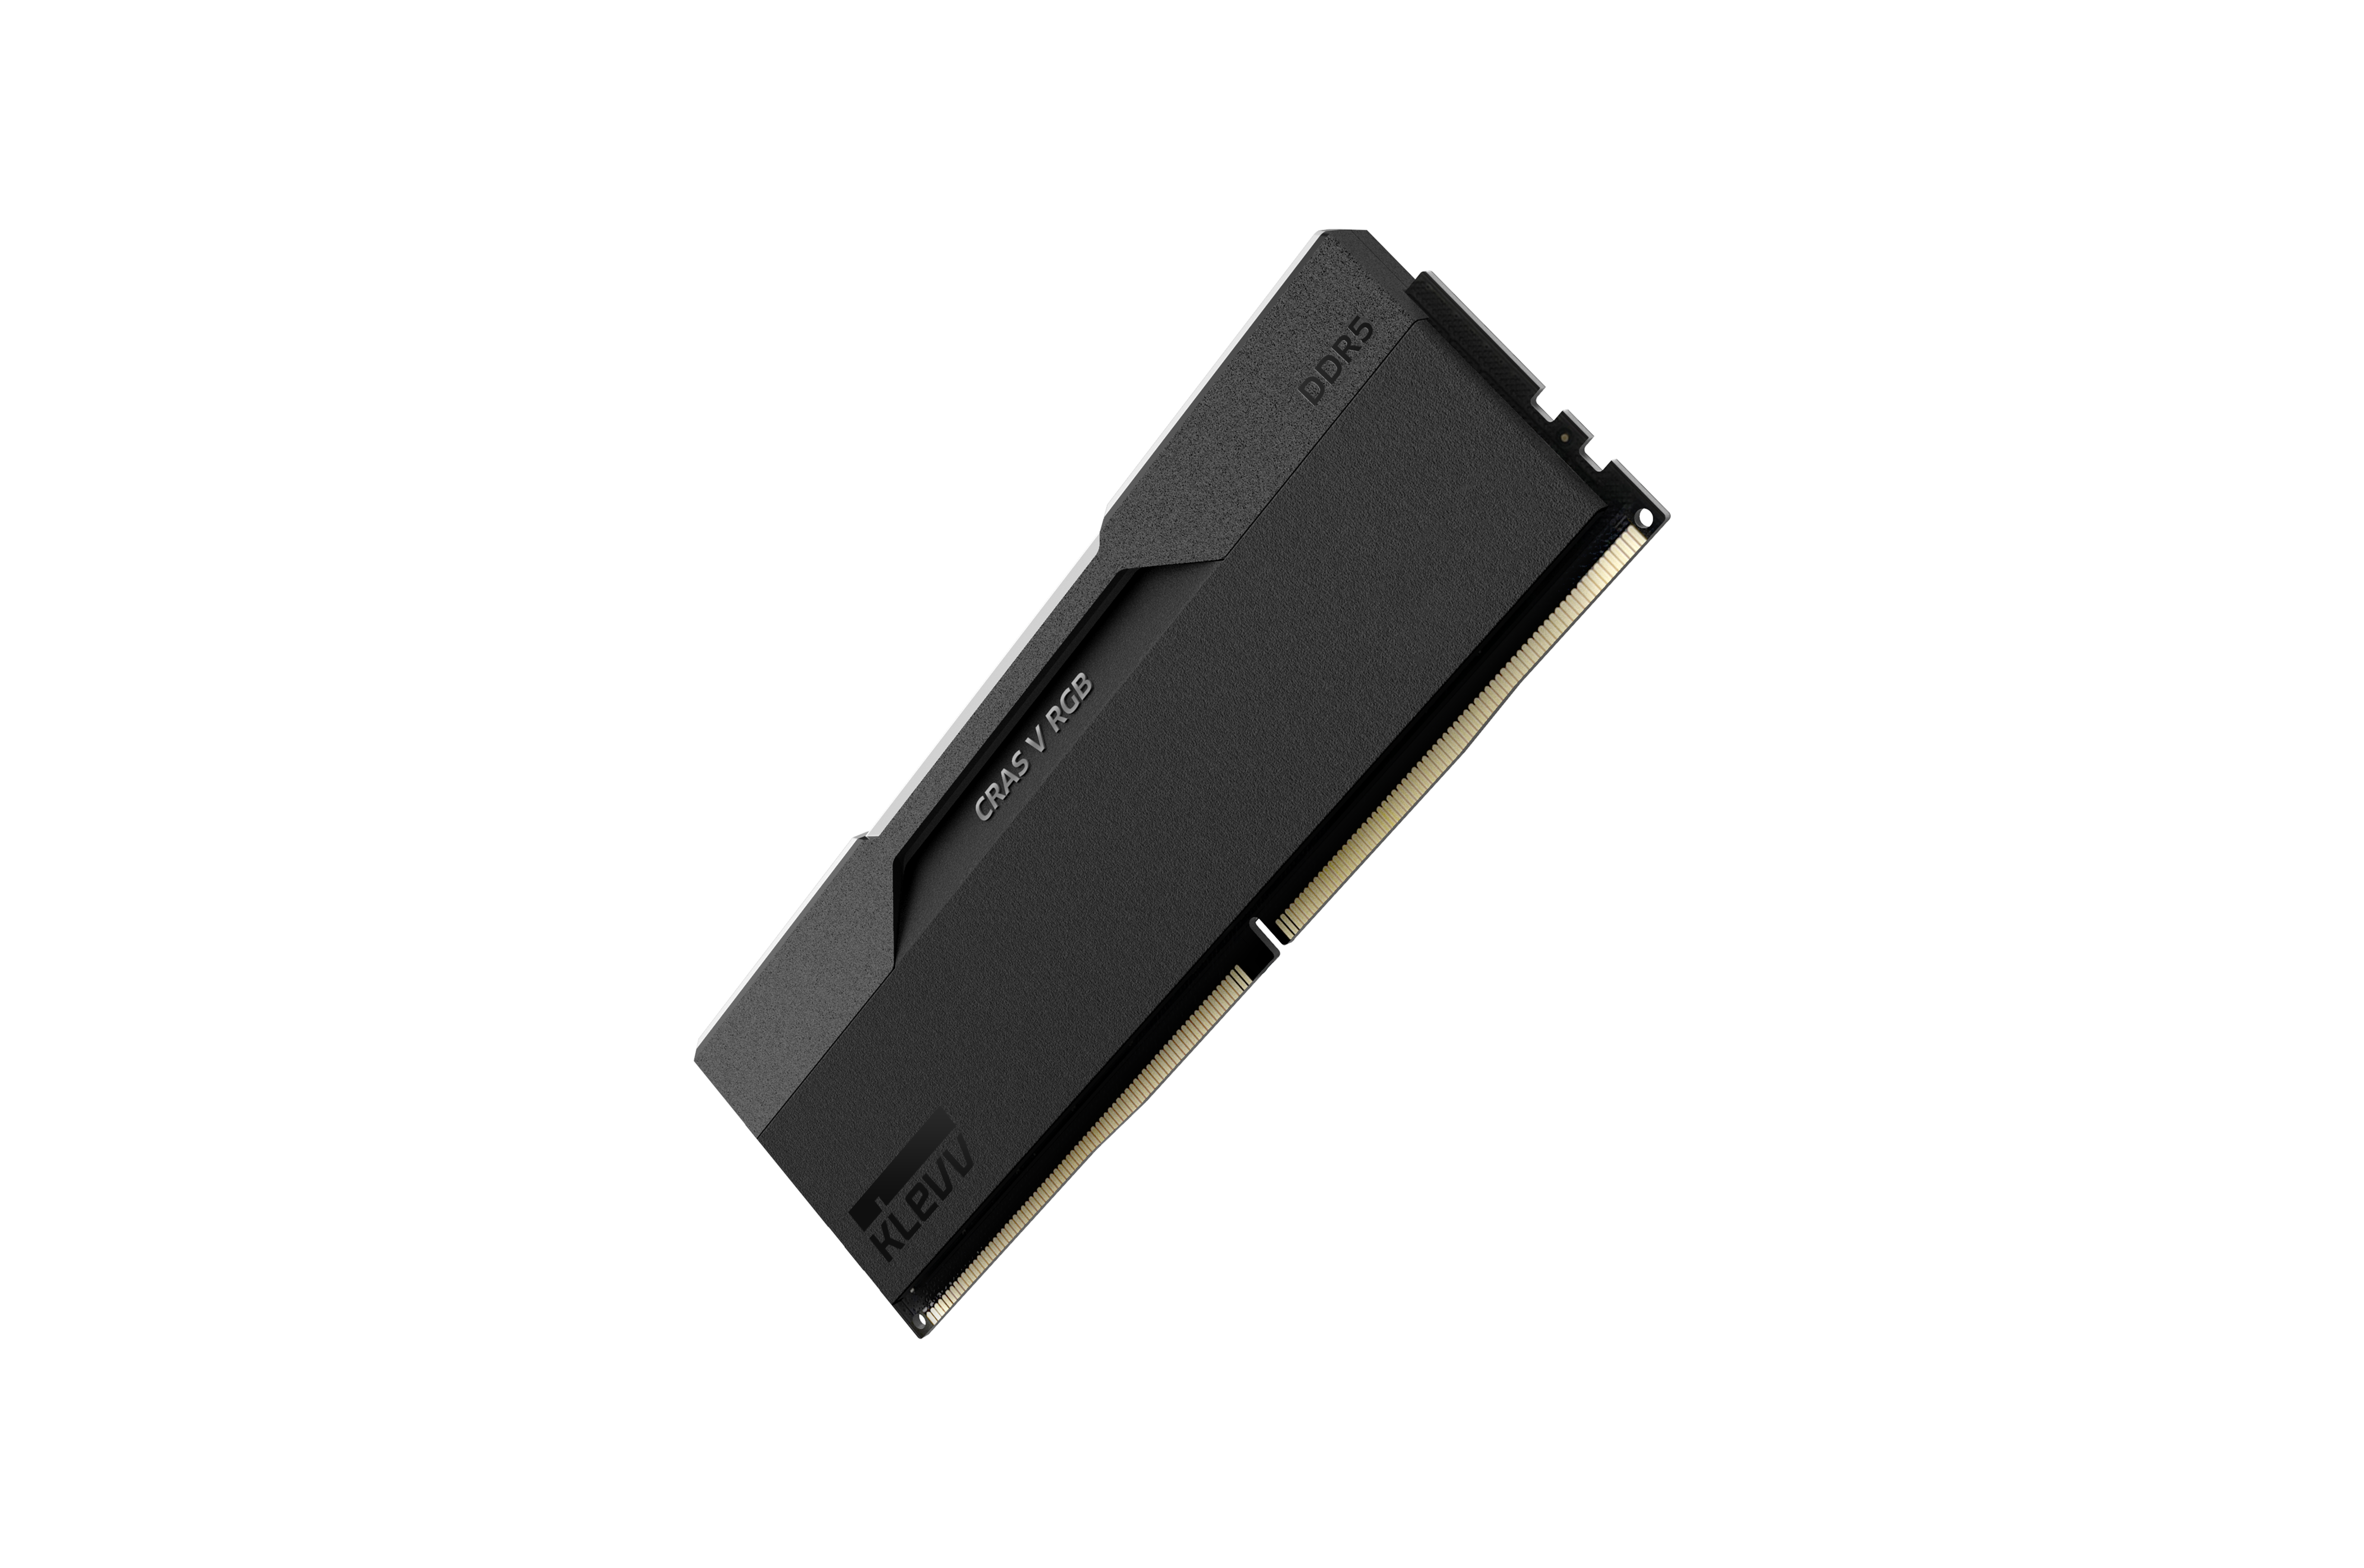 KLEVV CRAS V RGB DDR5 32 / 48 / 64 GB 6000-7600MHZ